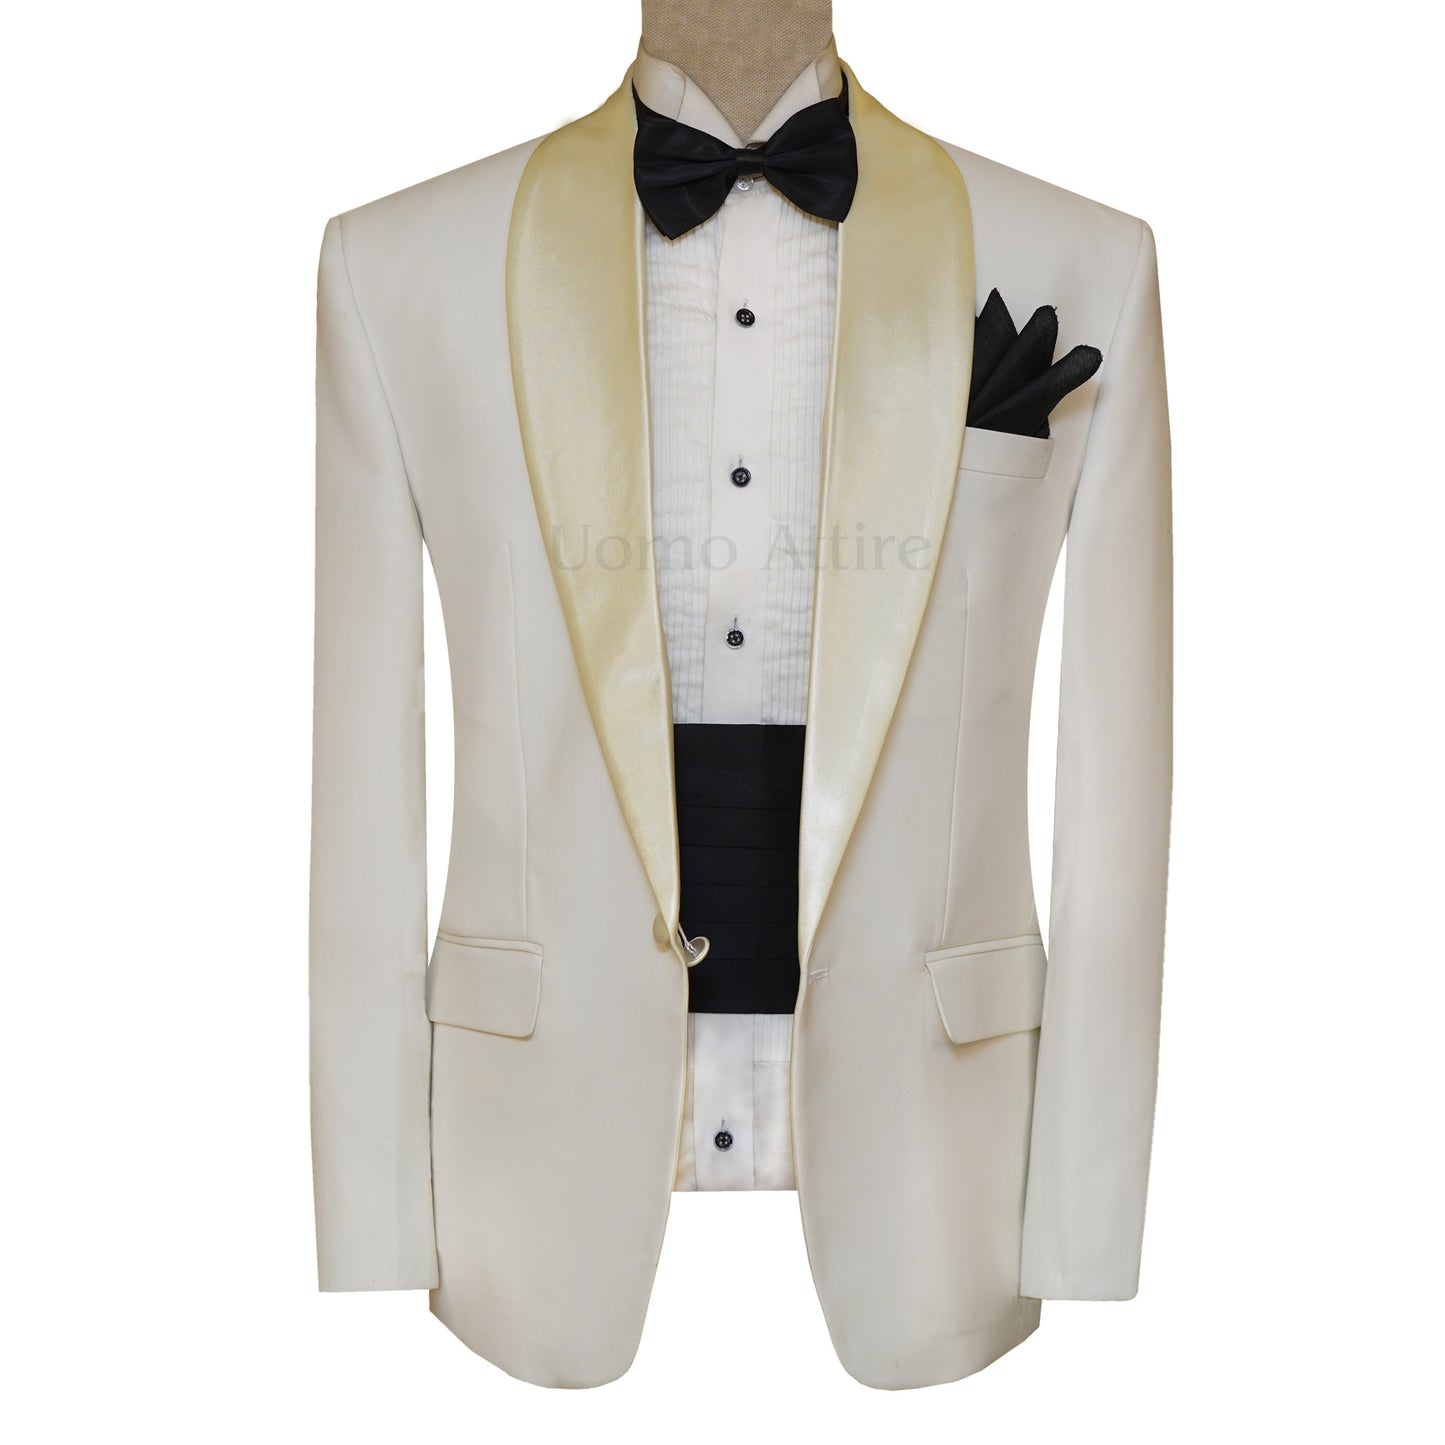 
                  
                    Wilvorst Dinner White Wedding Tuxedo Suit for Men
                  
                